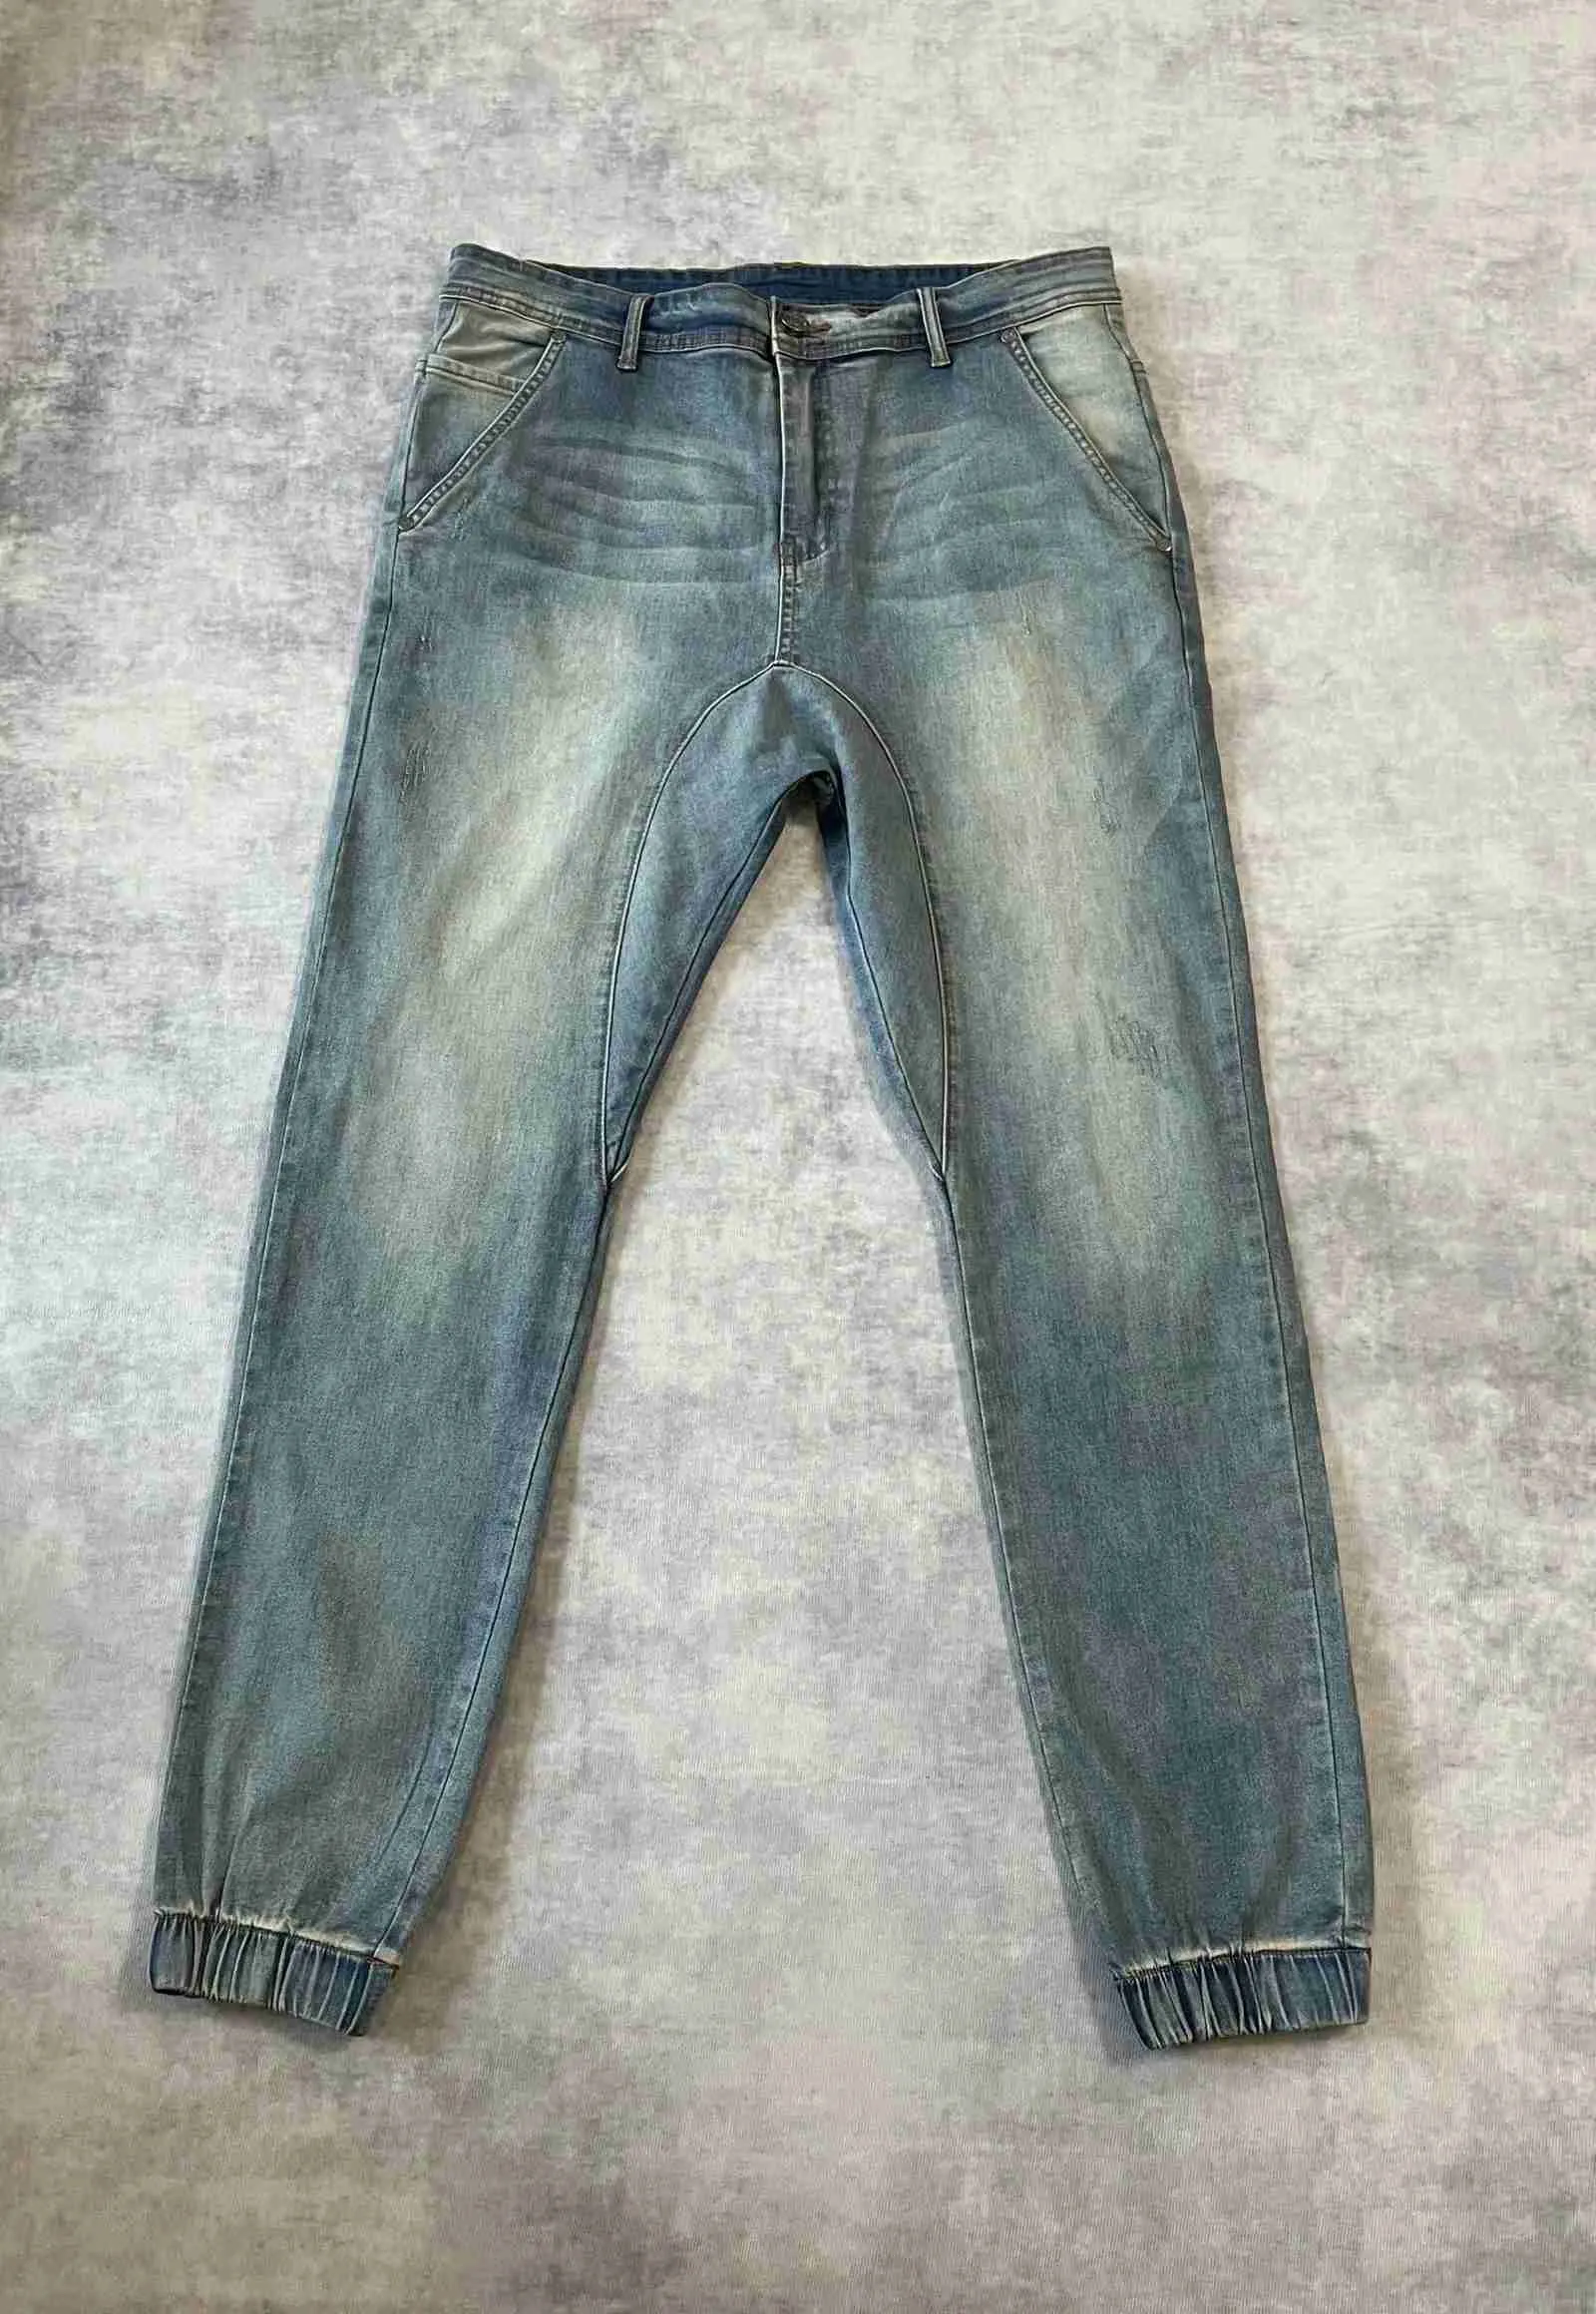 Mäns Jeans 21s Ins Manager Samma Hip Hop Rapper Basic Vintage Washed Benged Jeans